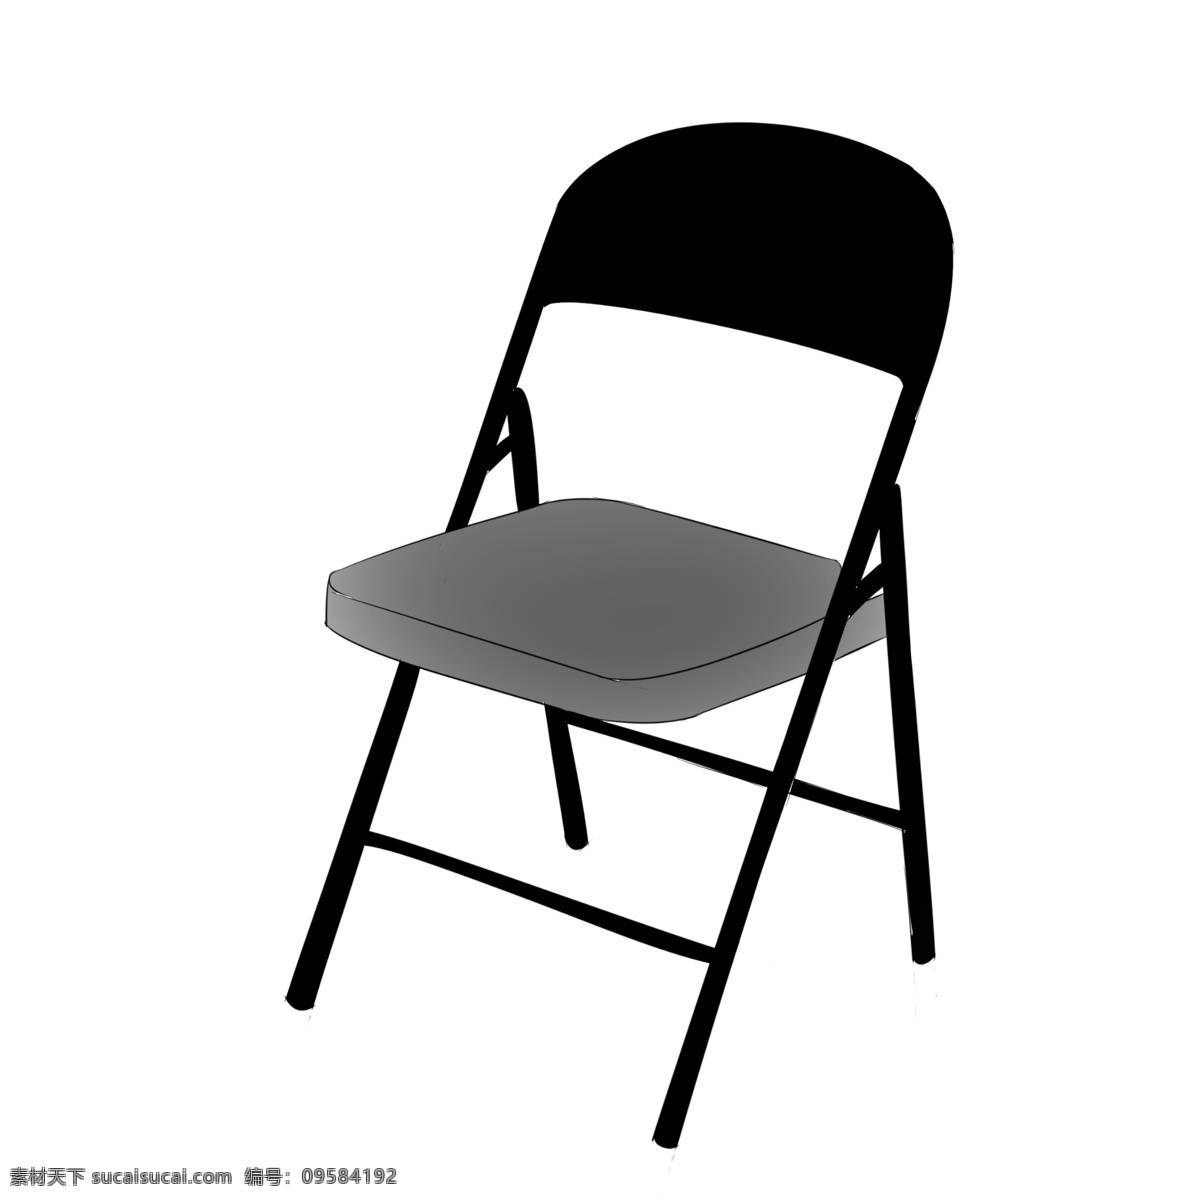 黑色折叠座椅 座椅 椅子 家具